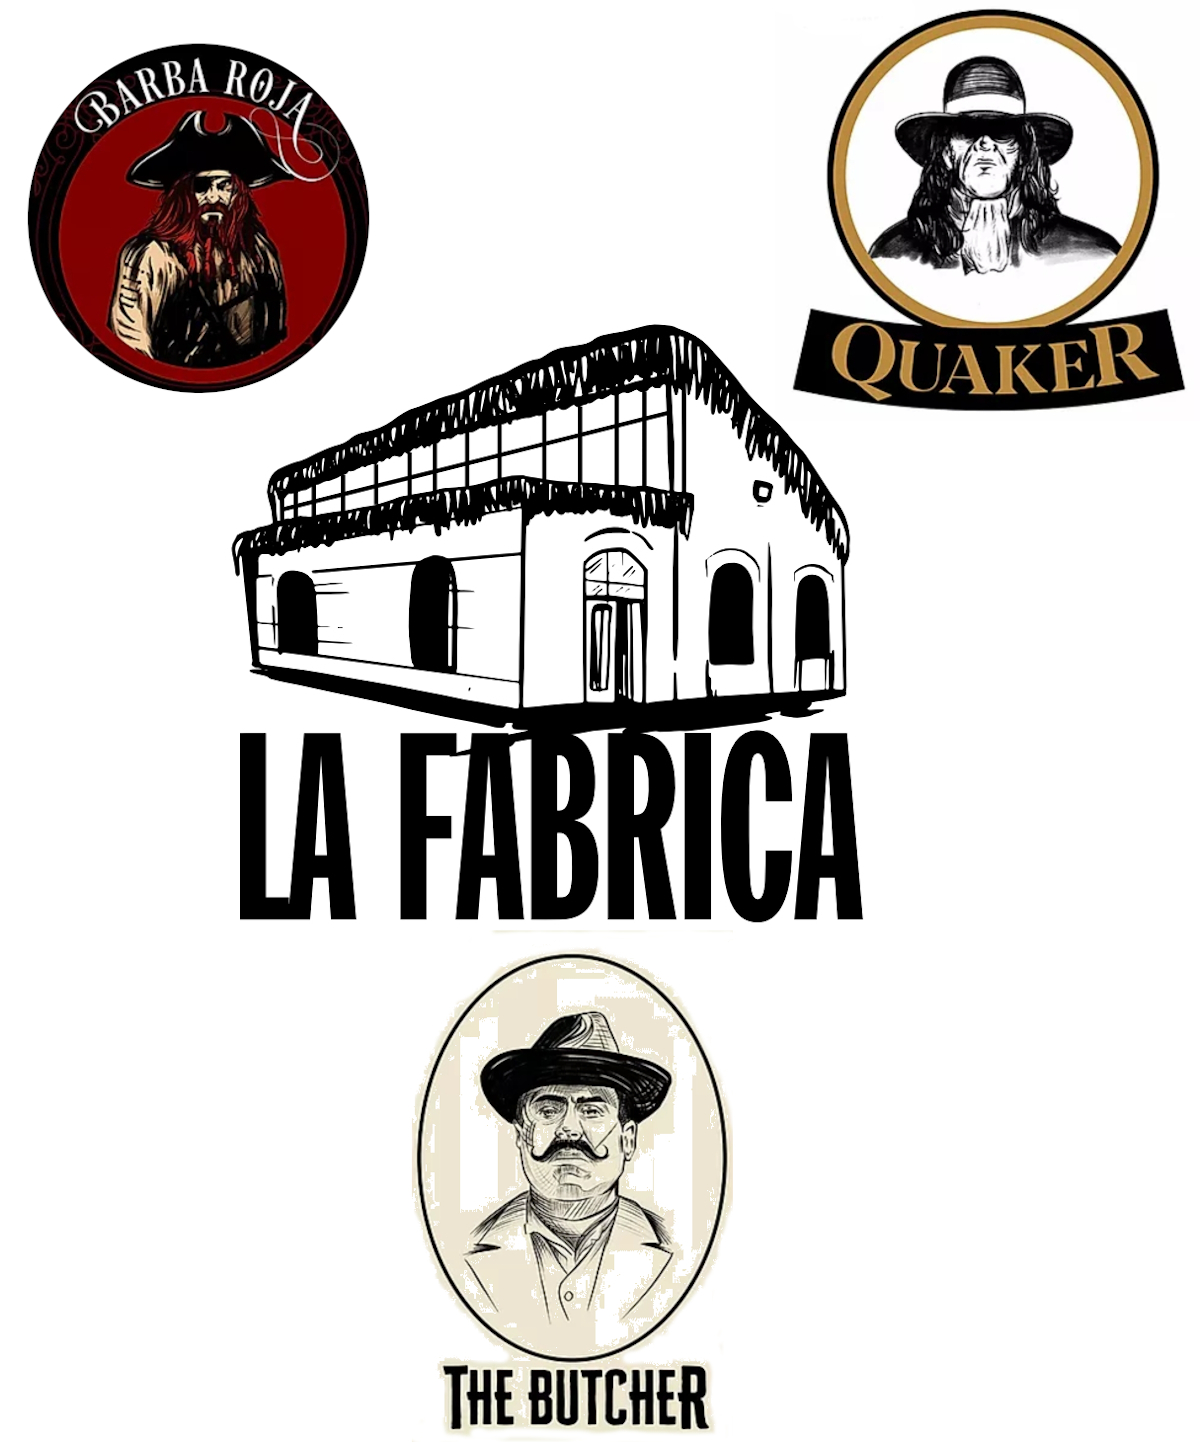 La Fabrica by Sinistro